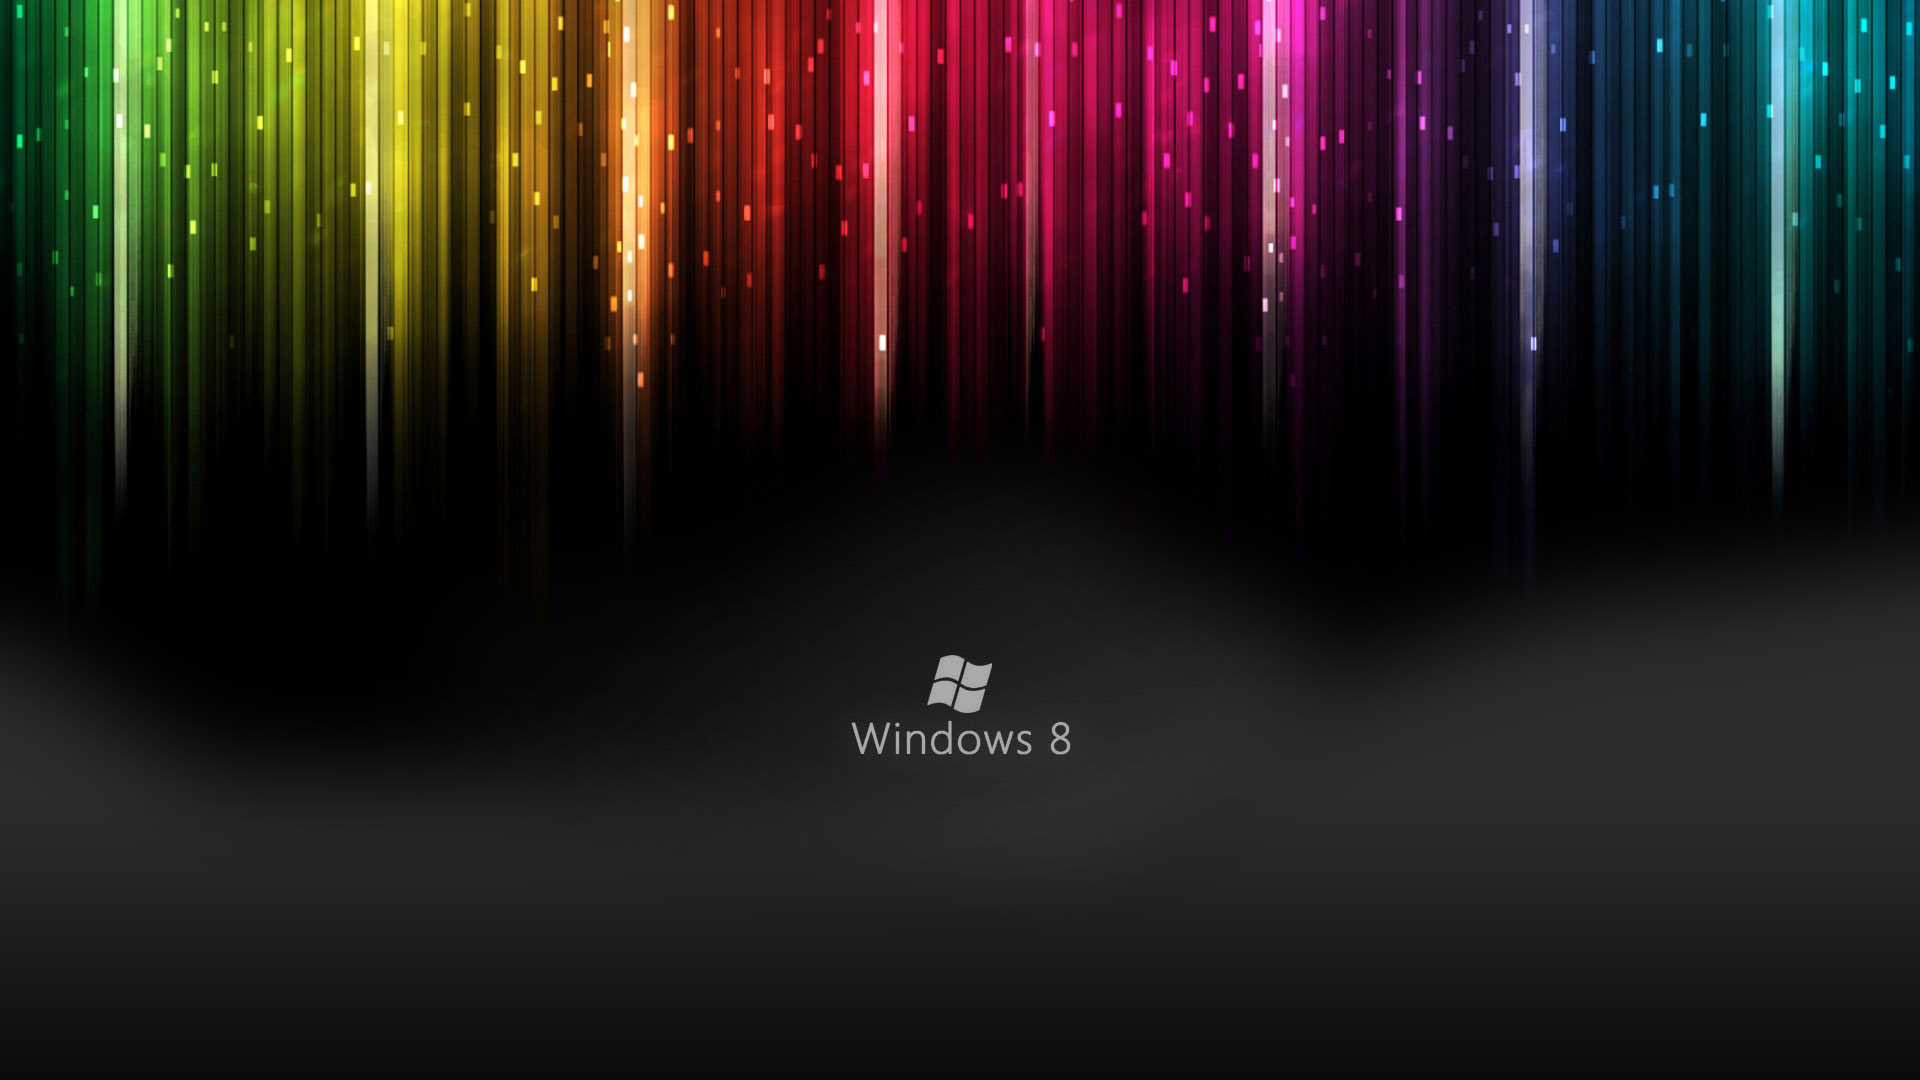 Windows 8 Live Wallpapers HD Wallpaper of Windows   hdwallpaper2013 1920x1080